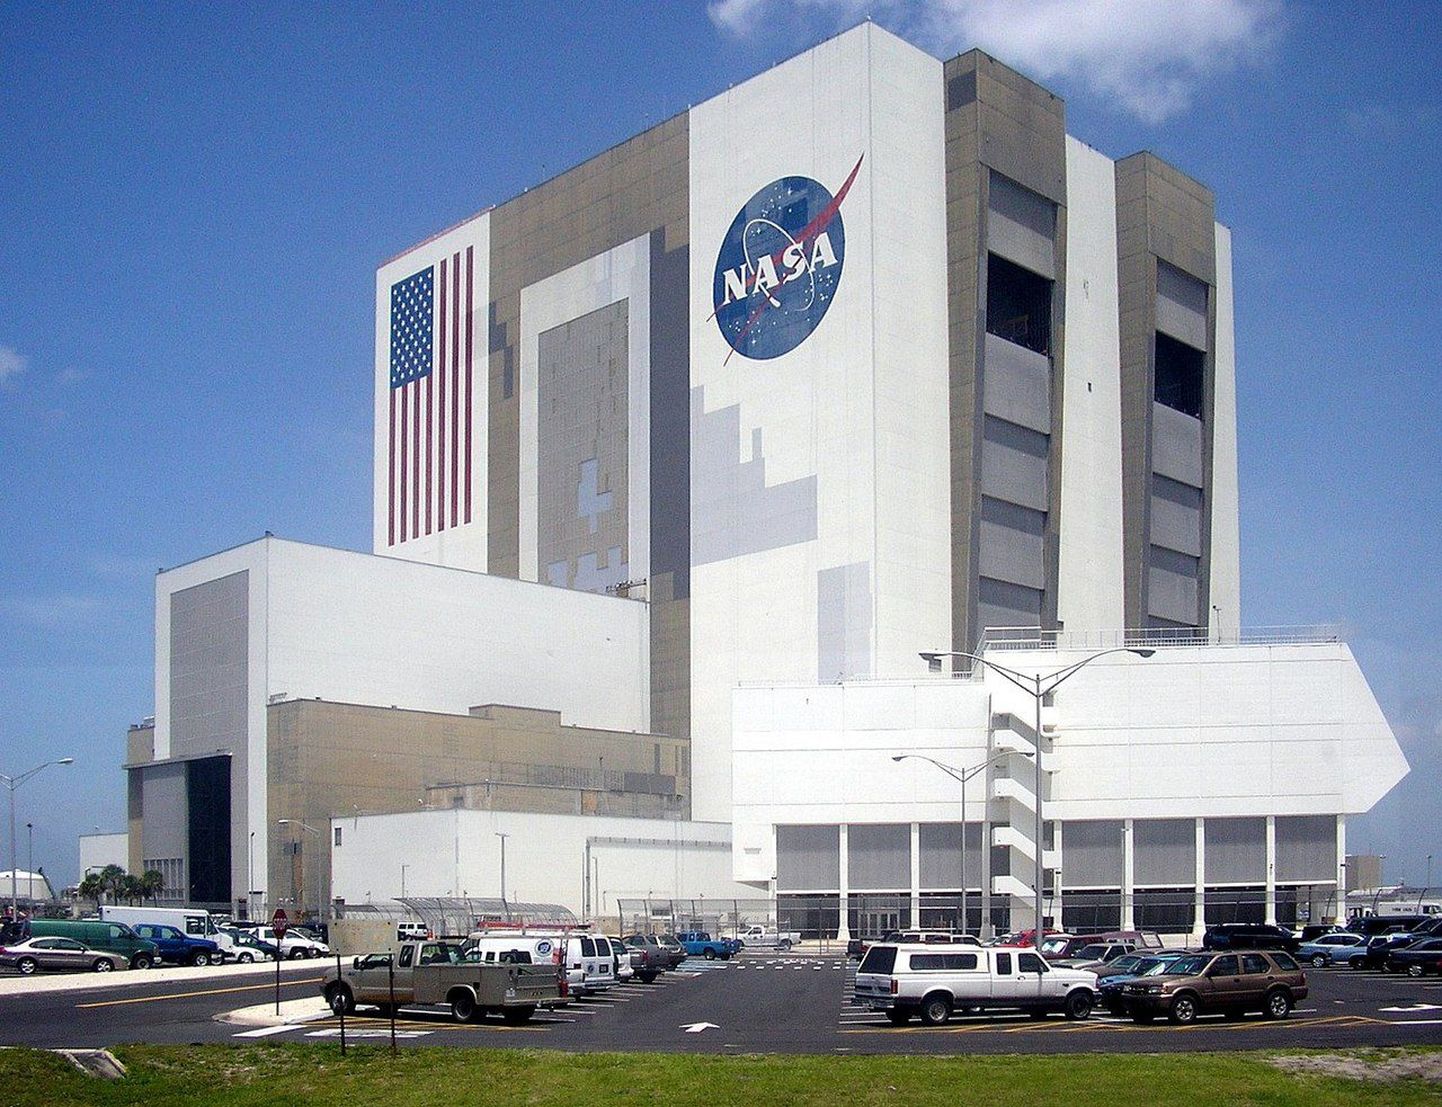 NASA tuntuim allüksus Kennedy Kosmosekeskus. NASA on suurima eelarvega kosmoseagentuur.